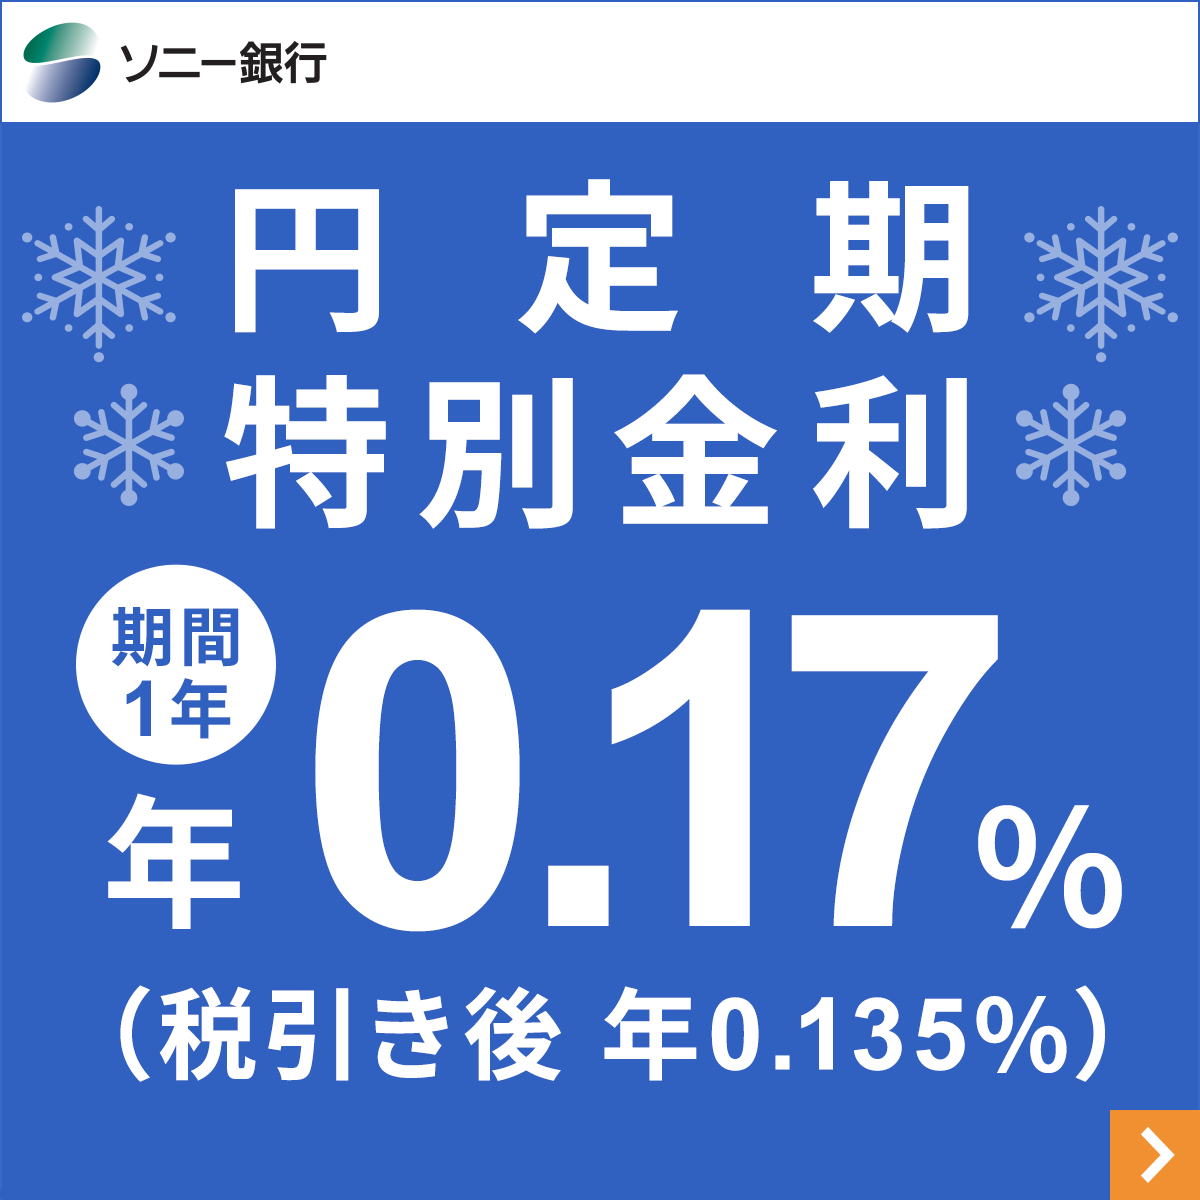 円定期特別金利 (ソニー銀行)